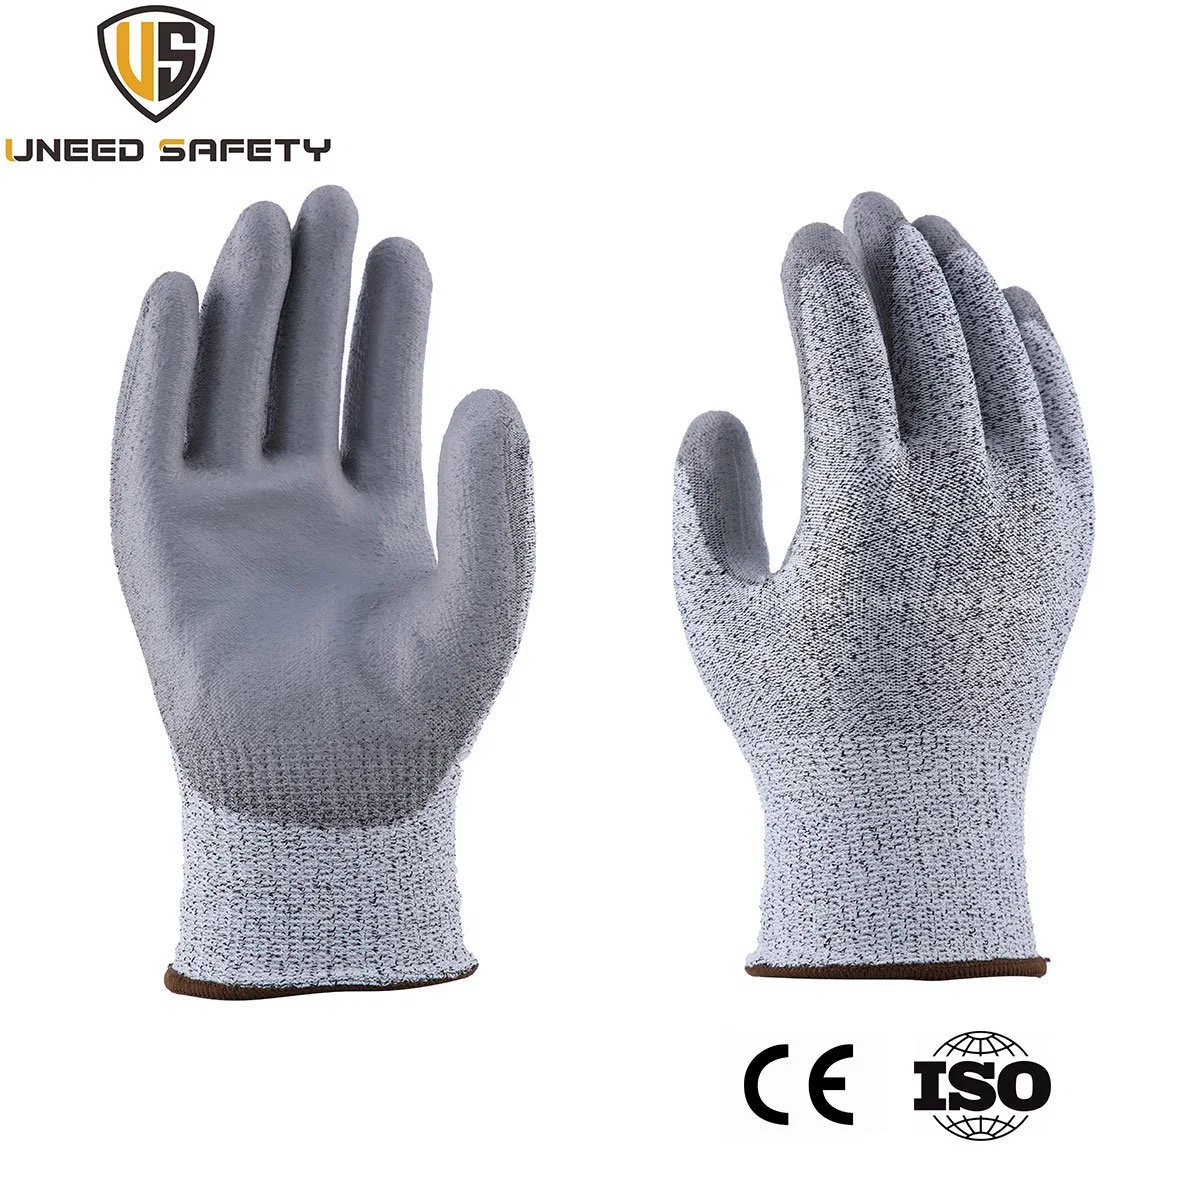 CE HPPE حماية يدوية غير ملحومة من العمل الميكانيكي السلامة أبيض عامل قفاز العمال المقاوم لقطع أبيض مضاد لقطع PU